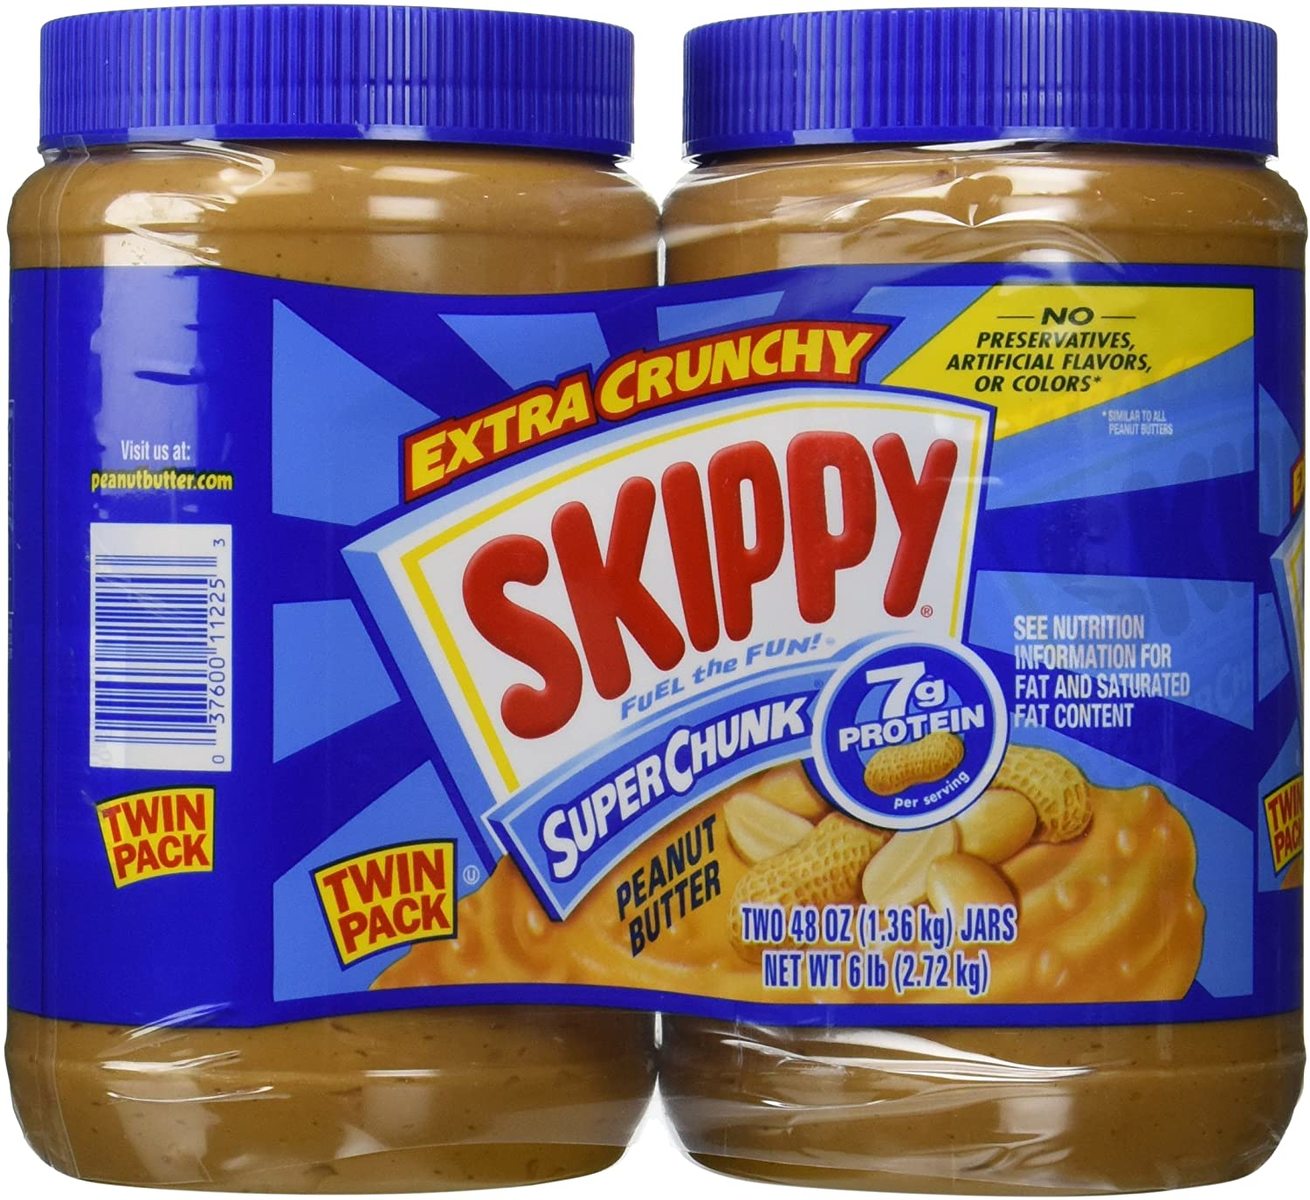 楽天市場 スキッピー ピーナッツバター Skippy Crunchy スーパーチャンク 合計2 72g 1 36kg 2本 コストコ 海外日用品のグリーンファスト